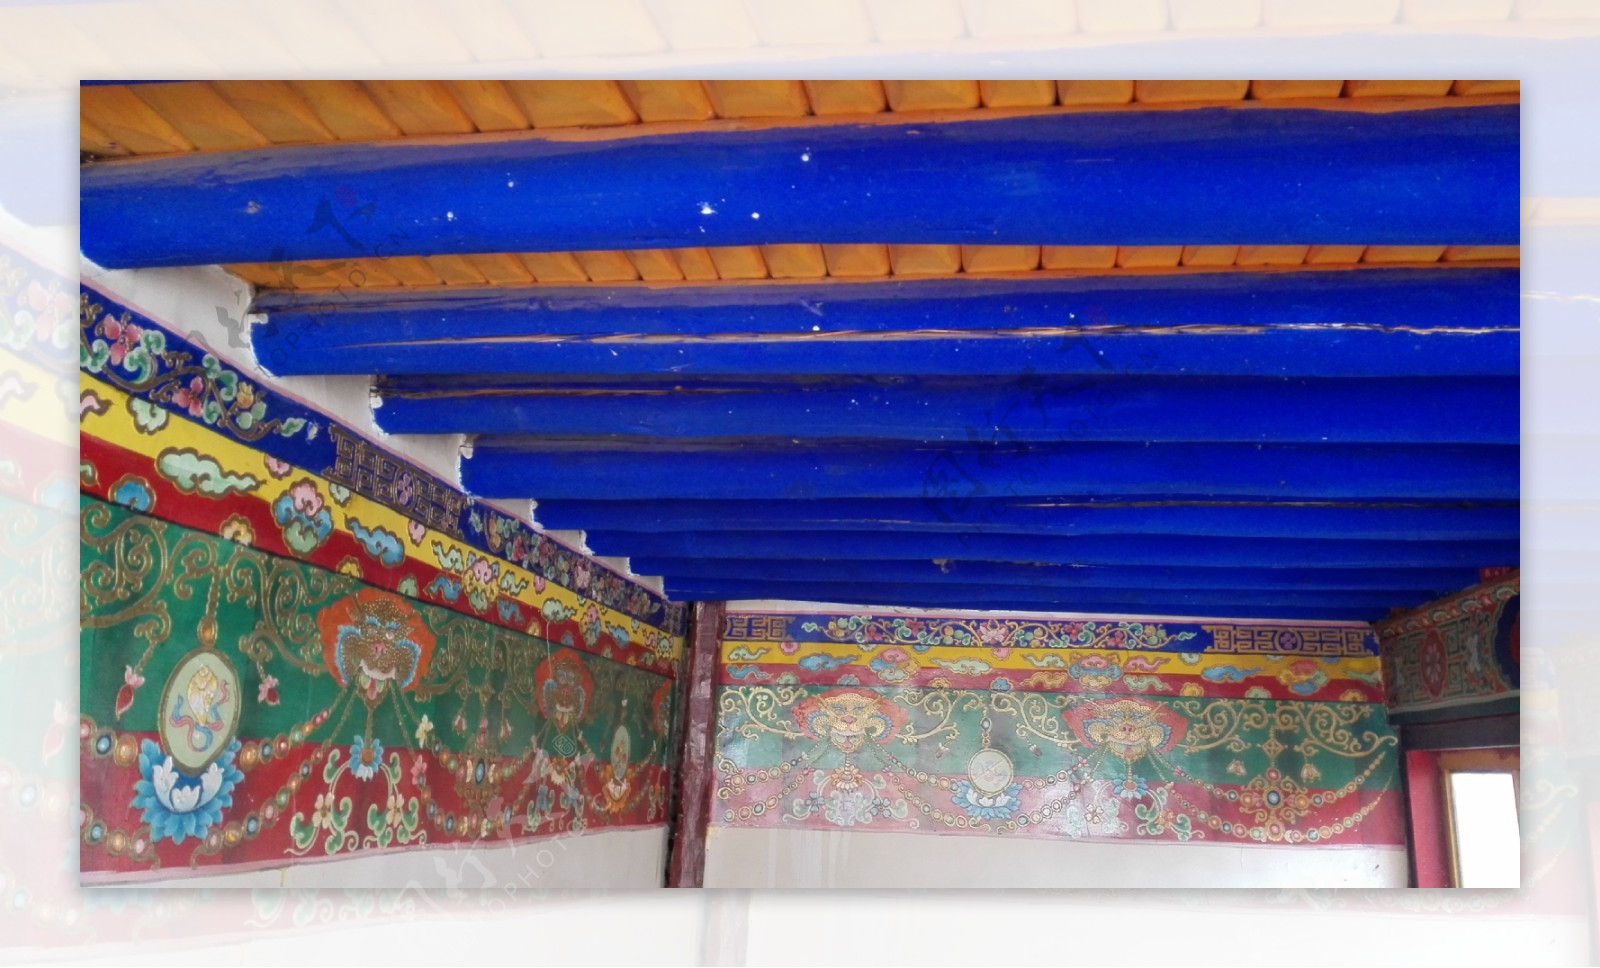 传统藏式房屋寺庙建筑结构图片